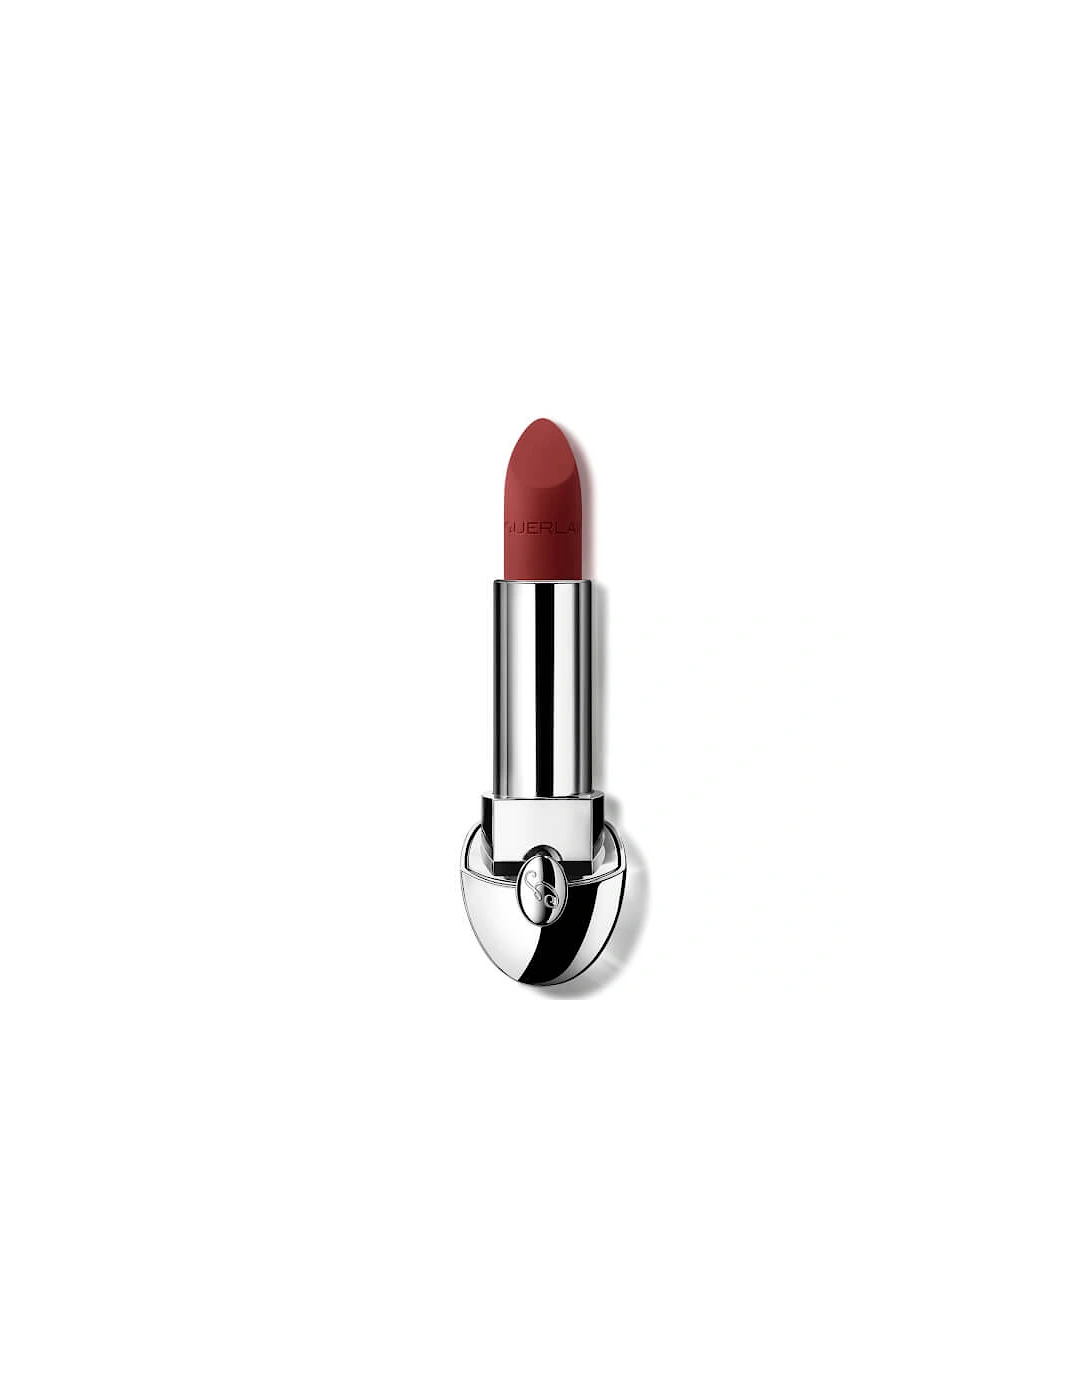 Rouge G Luxurious Velvet 16 Hour Wear High-Pigmentation Velvet Matte Lipstick - 775 Wine Red, 2 of 1